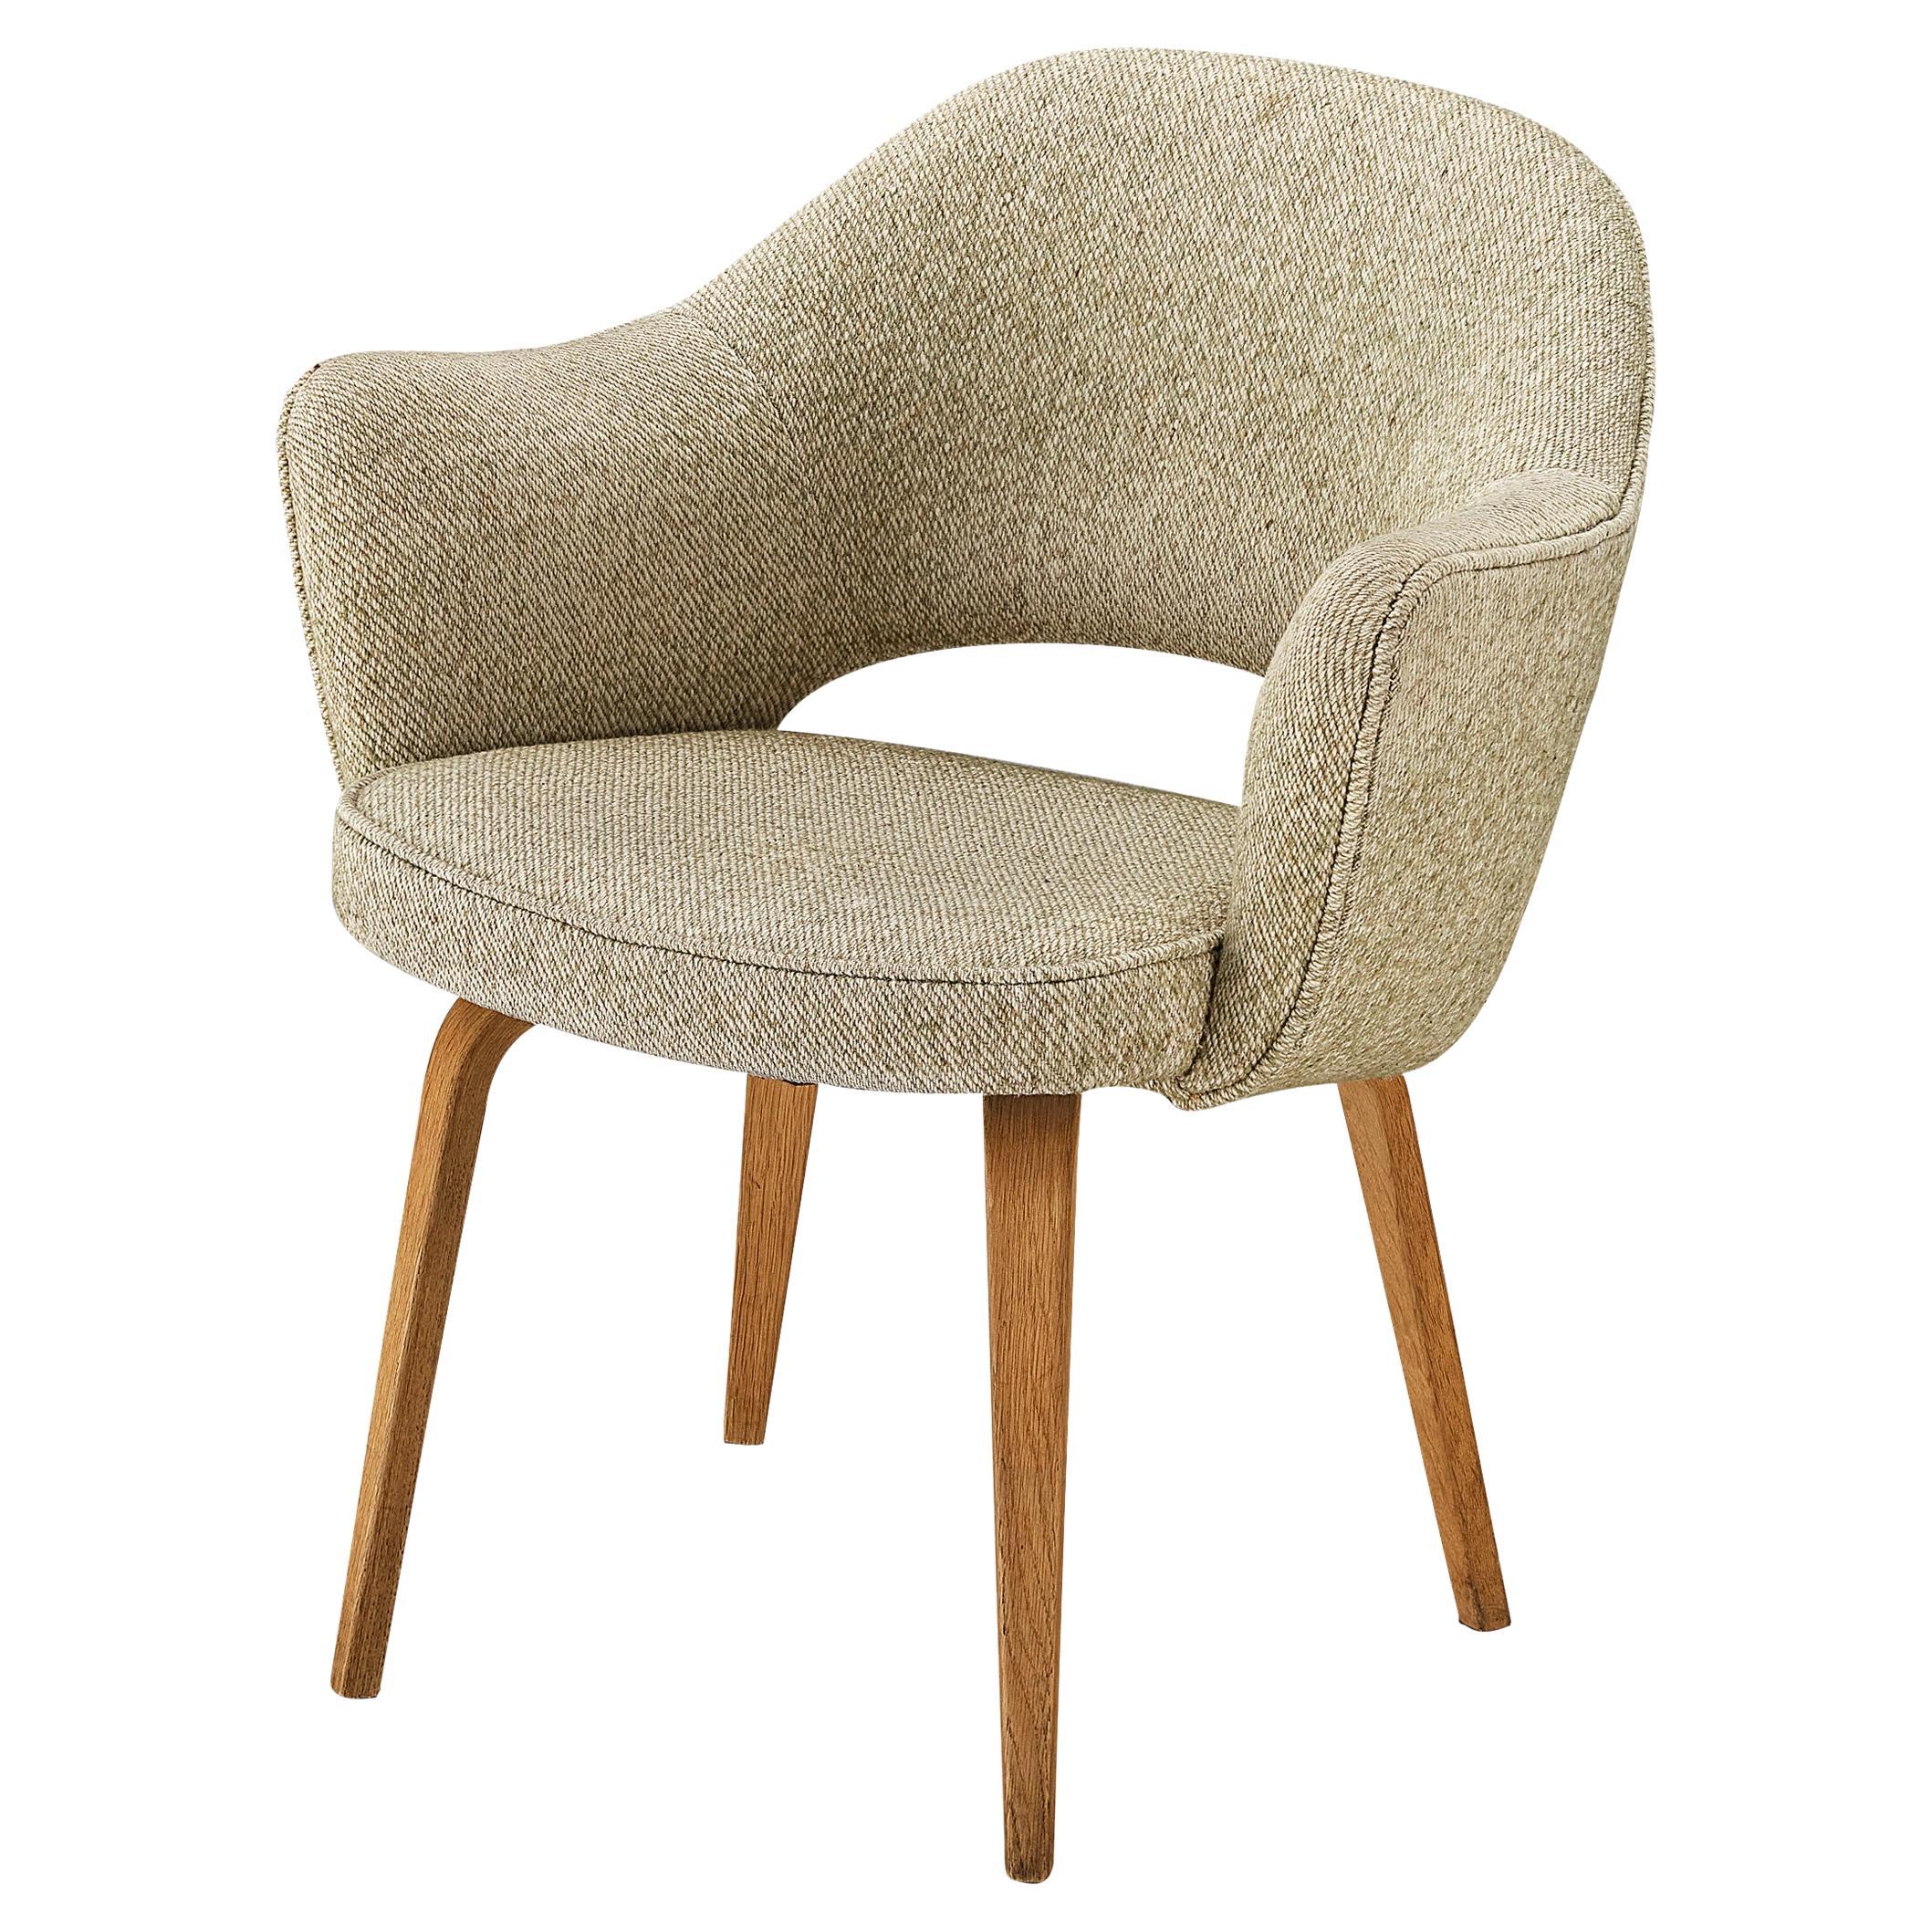 Eero Saarinen für Knoll: Sessel „Executive“ aus beigem cremefarbenem Kreme-Stoff und Eiche 